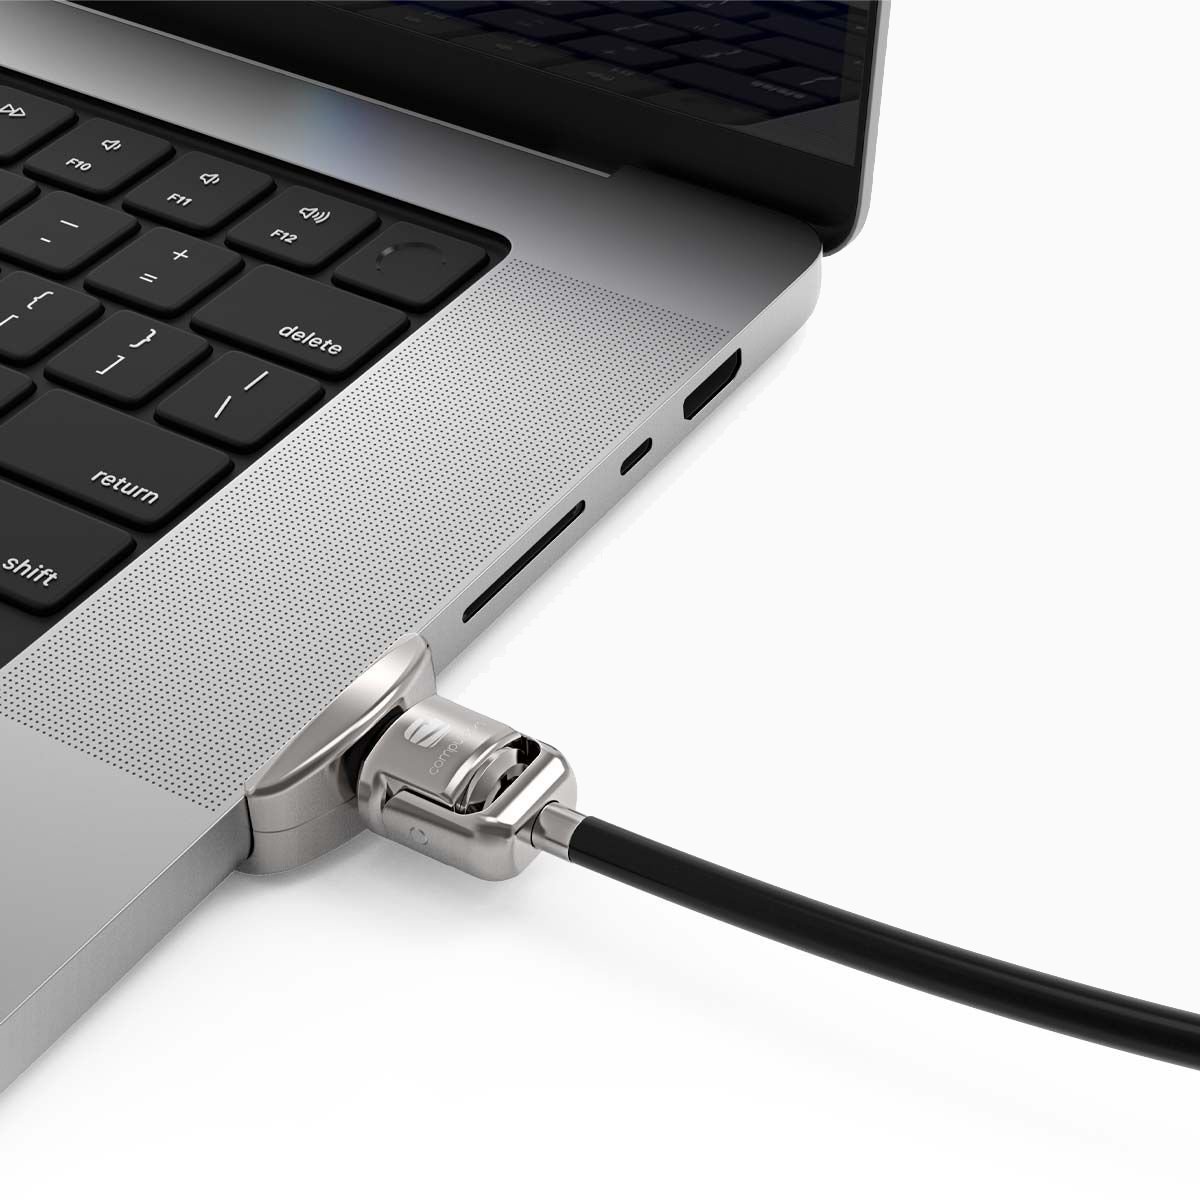 Maclocks MacBook Pro 16 Lock – The Ledge